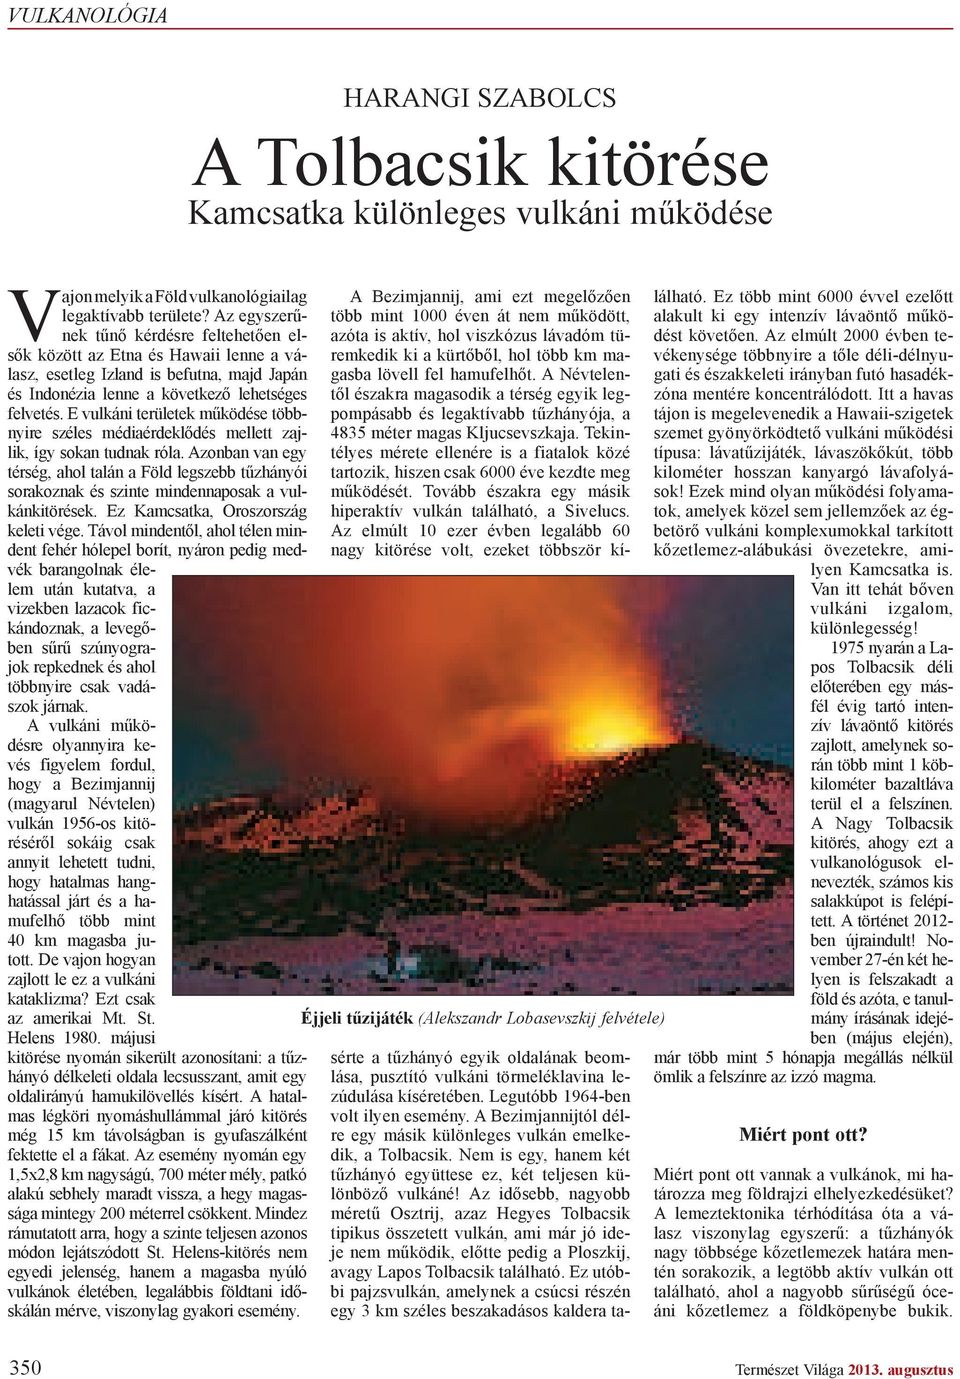 E vulkáni területek m ködése többnyire széles médiaérdekl dés mellett zajlik, így sokan tudnak róla.